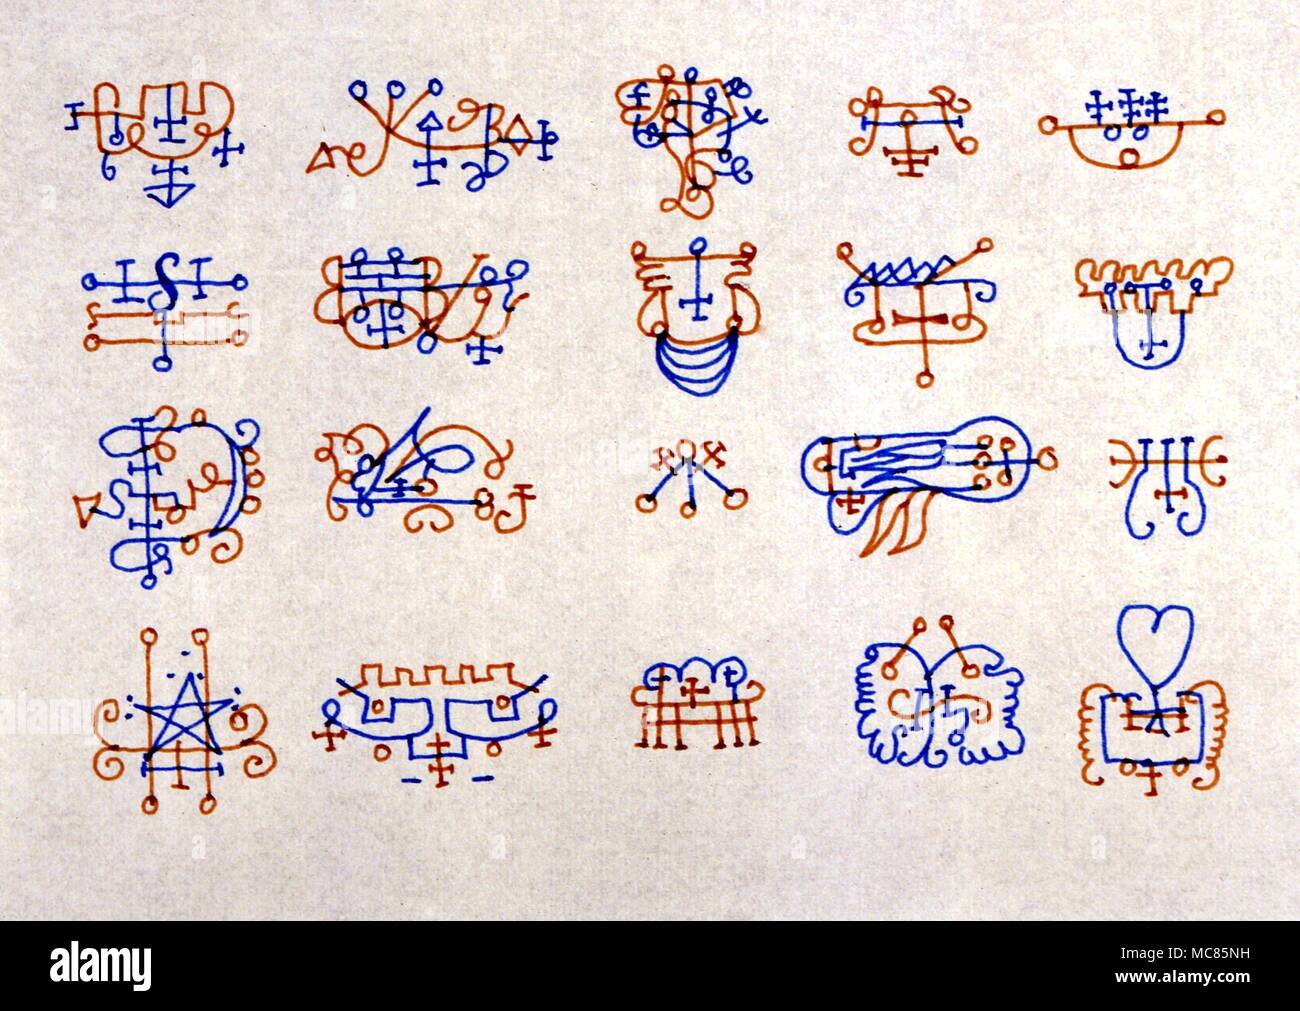 GRIMOIRE dämonische Siegel aus dem 17. Jahrhundert grimoires Obere Reihe, von links nach rechts: andrealphus, balam, Berith, ipos, systry 2. Reihe, von links nach rechts: andromalius, bathin, agaros, gomory, Vine 3. Reihe, von links nach rechts: asmodai, beleth, marbas, shax, zepar 4. Reihe, von links nach rechts: Astaroth, Belial, barbatos, seere, vapula Stockfoto